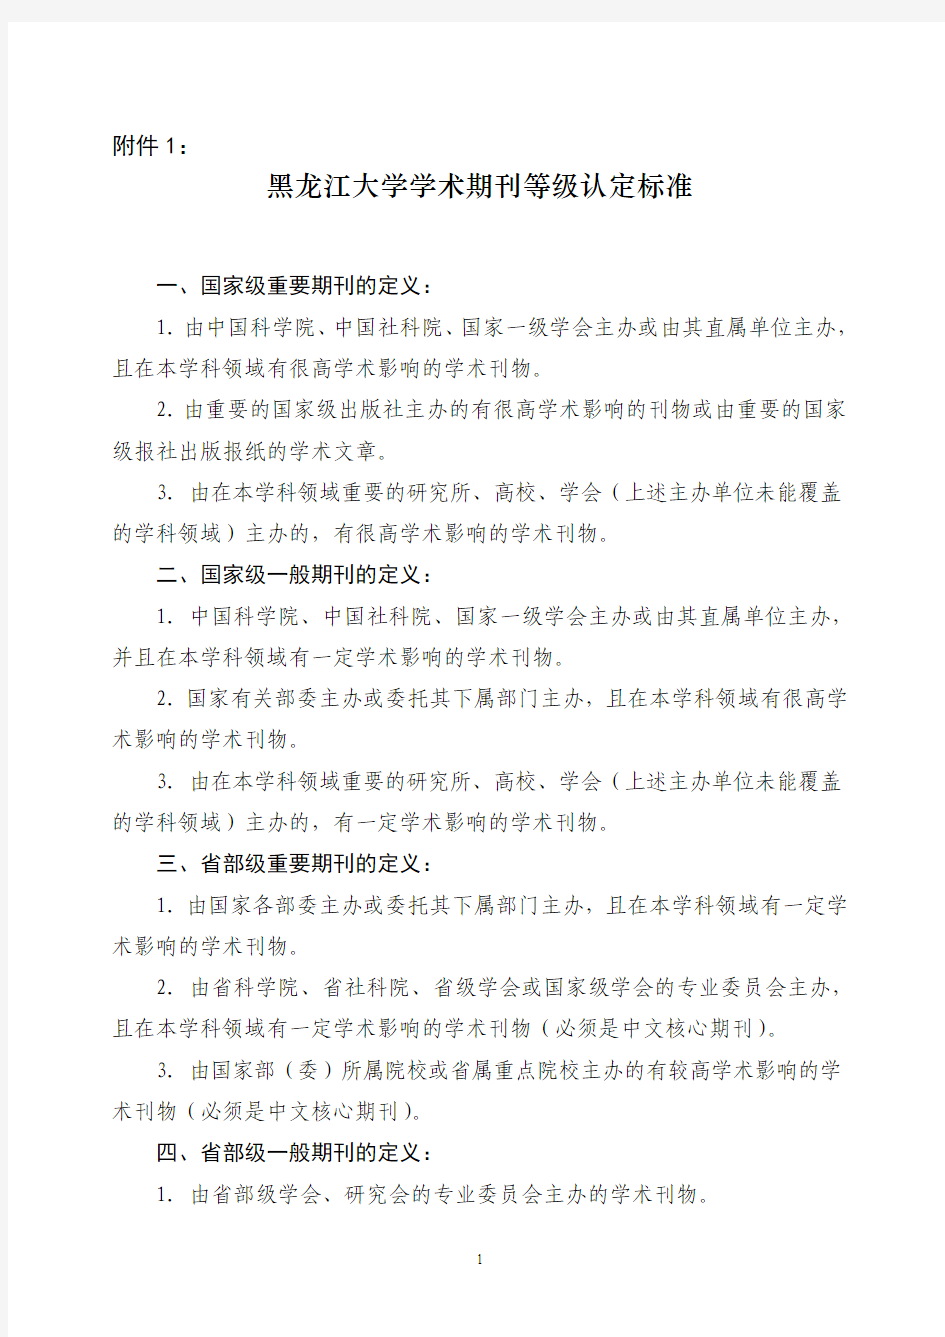 黑龙江大学学术期刊等级认定标准